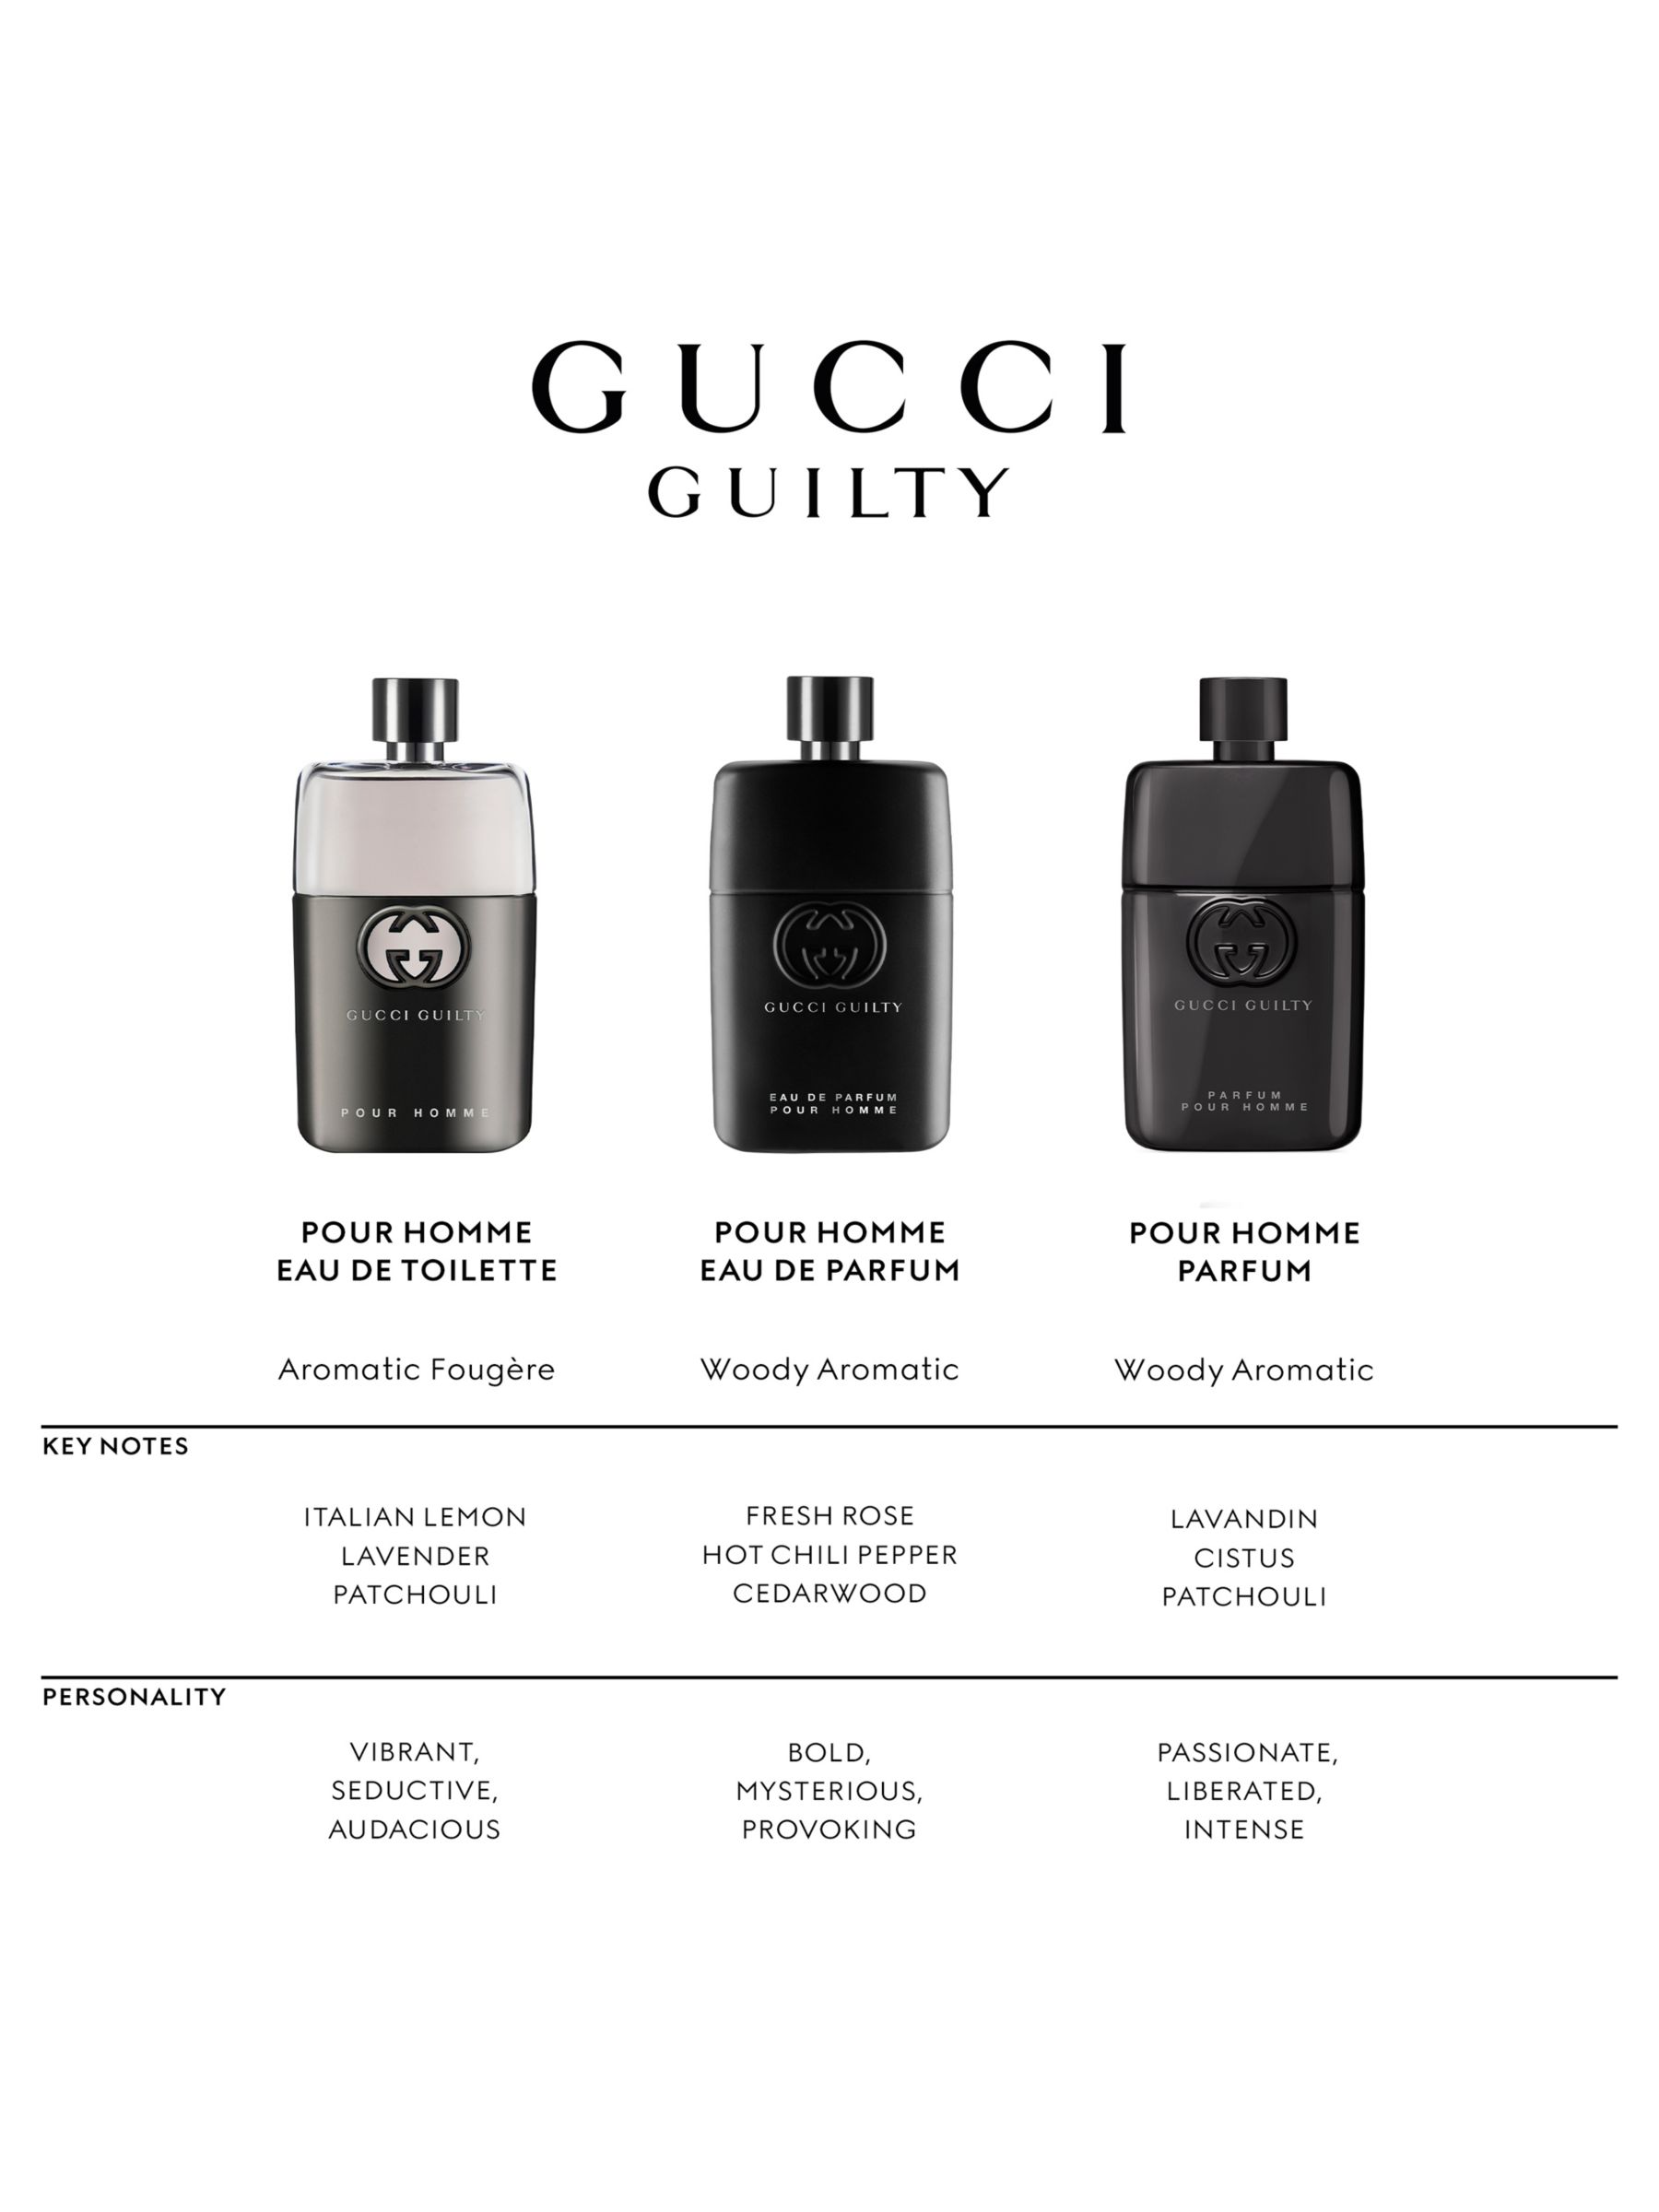 Gucci Guilty Pour Homme Parfum, 200ml